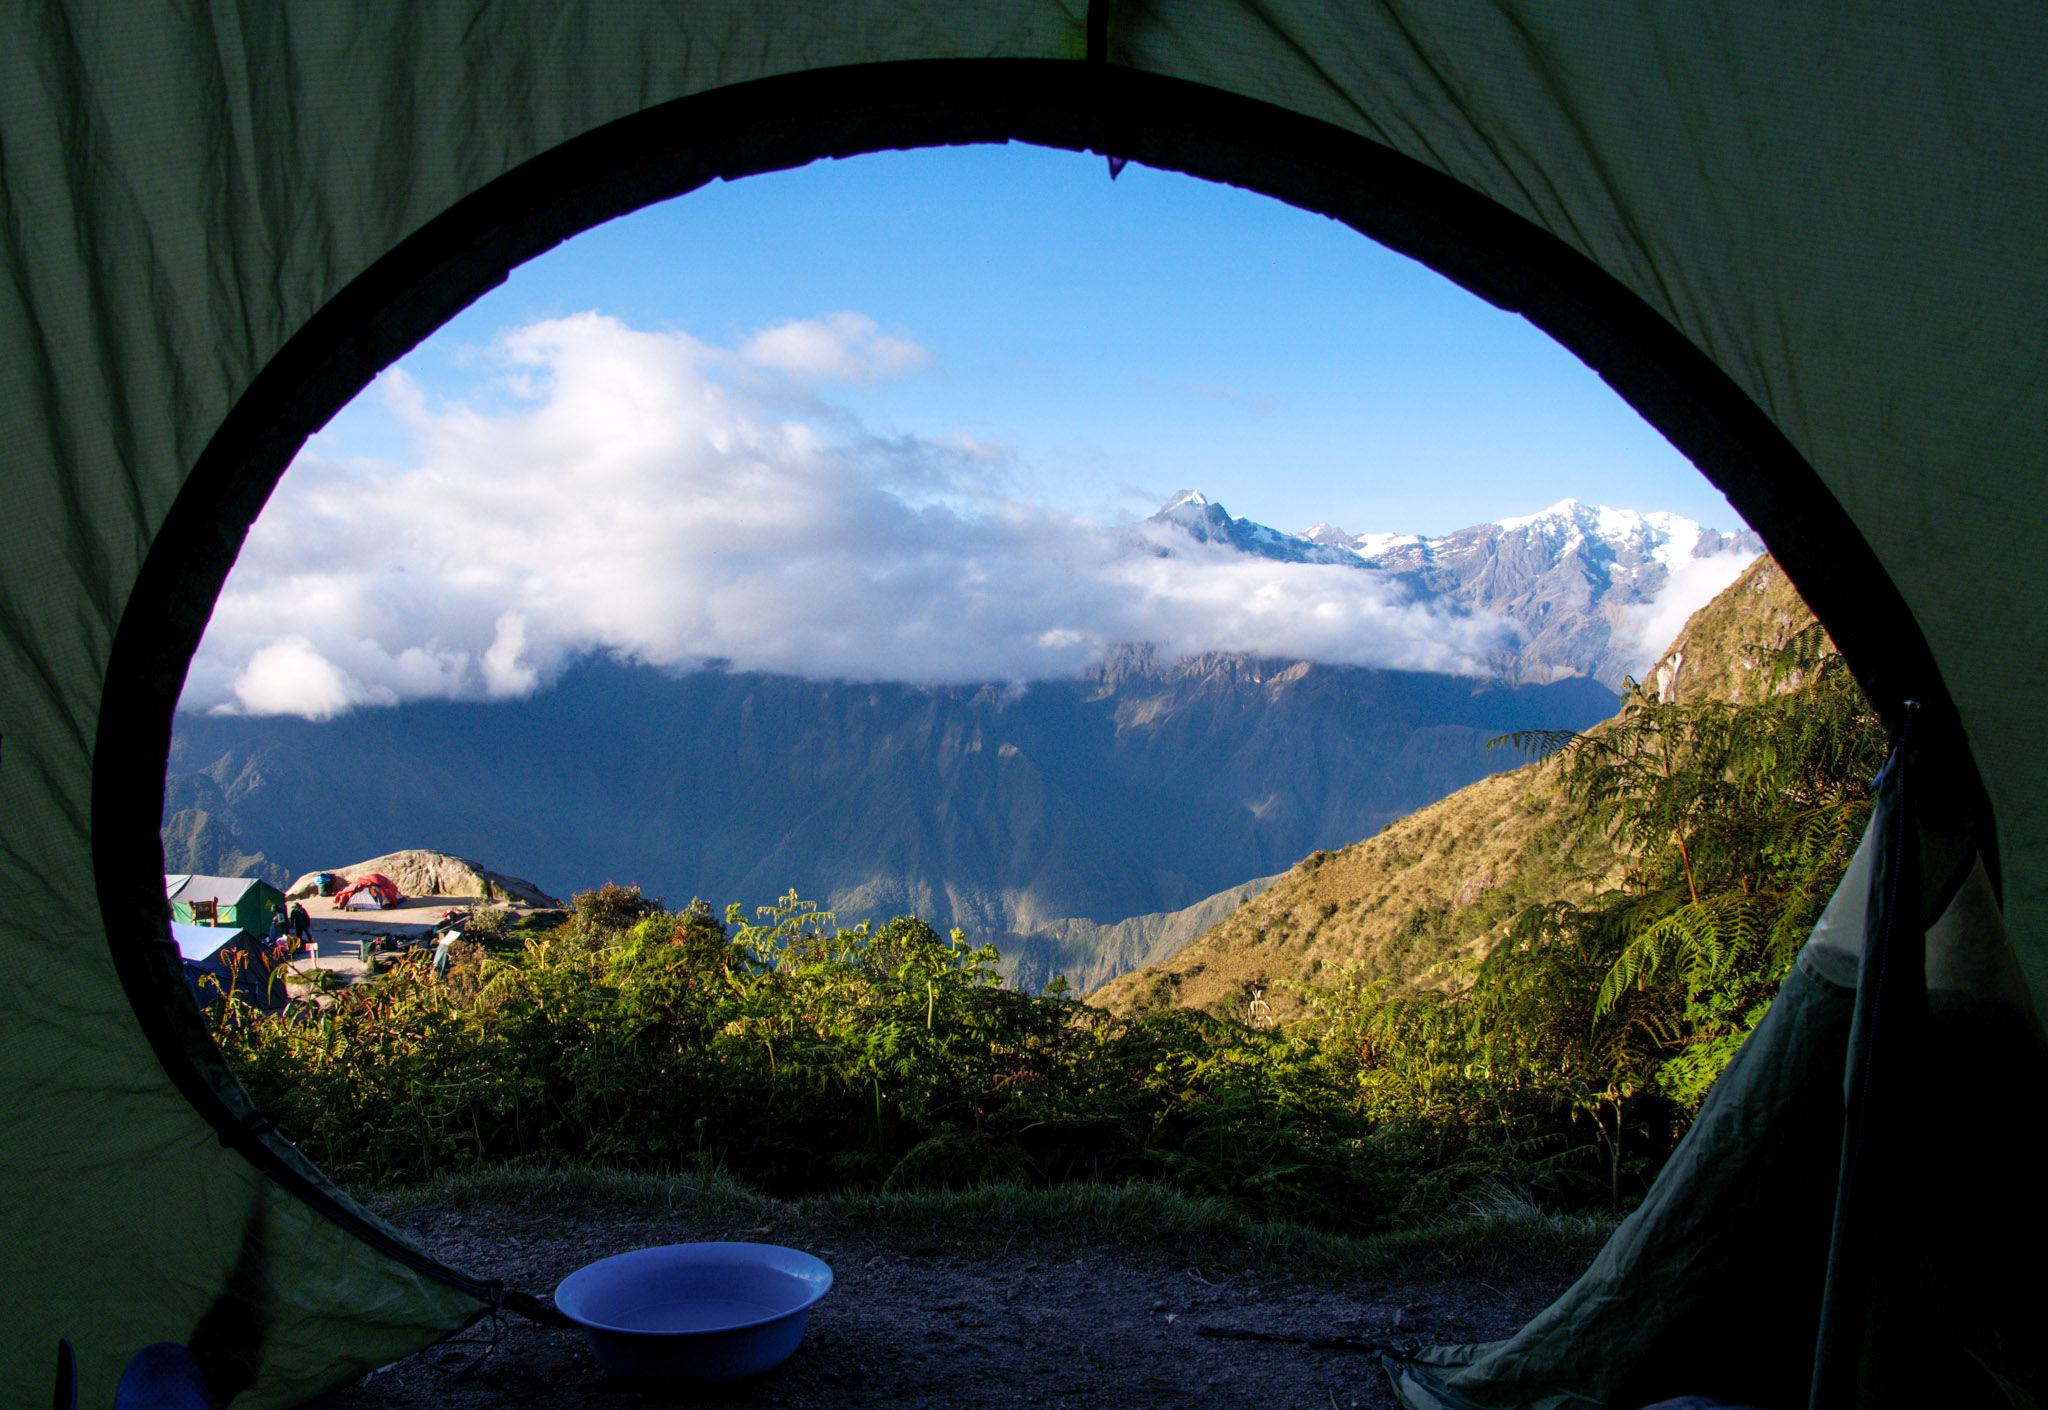 Unter #tentporn sammelt sich im Netz, was Camper so fotografieren. Diese Zeltaussicht stammt nach Angabe der Autoren aus Phuyupatamarca, Peru.